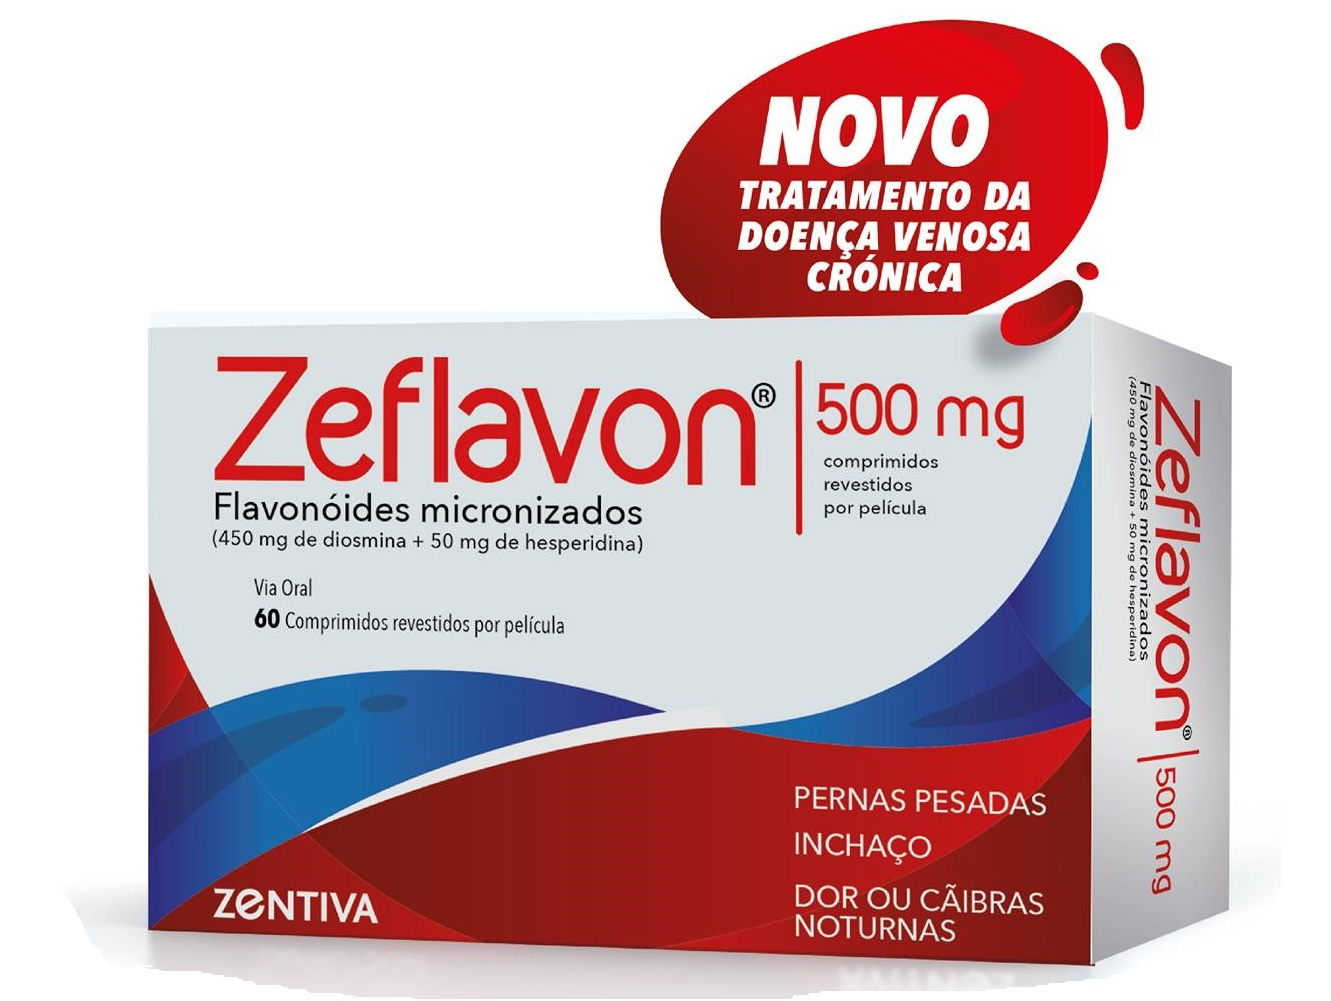 Comprimidos Pernas Cansadas Daflon 1000 mg Daflon